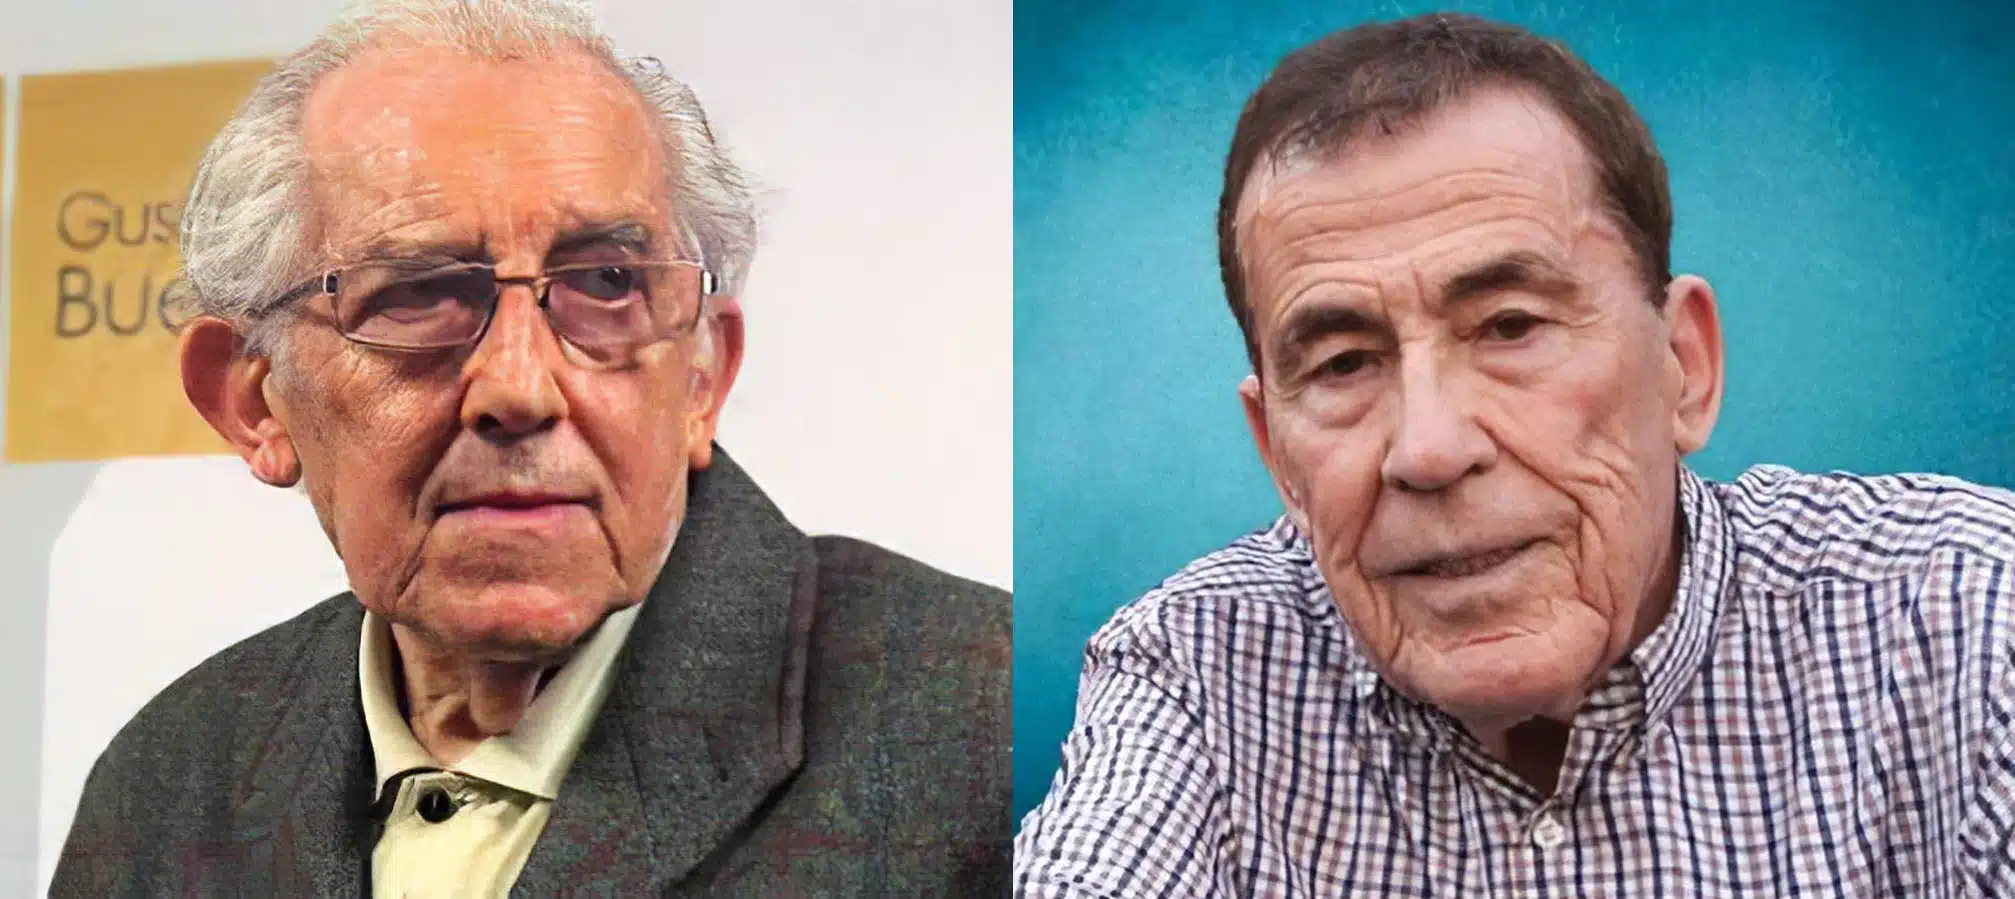 Gustavo Bueno y Fernando Sánchez Dragó, dos hombres que veían la realidad más allá de las palabras